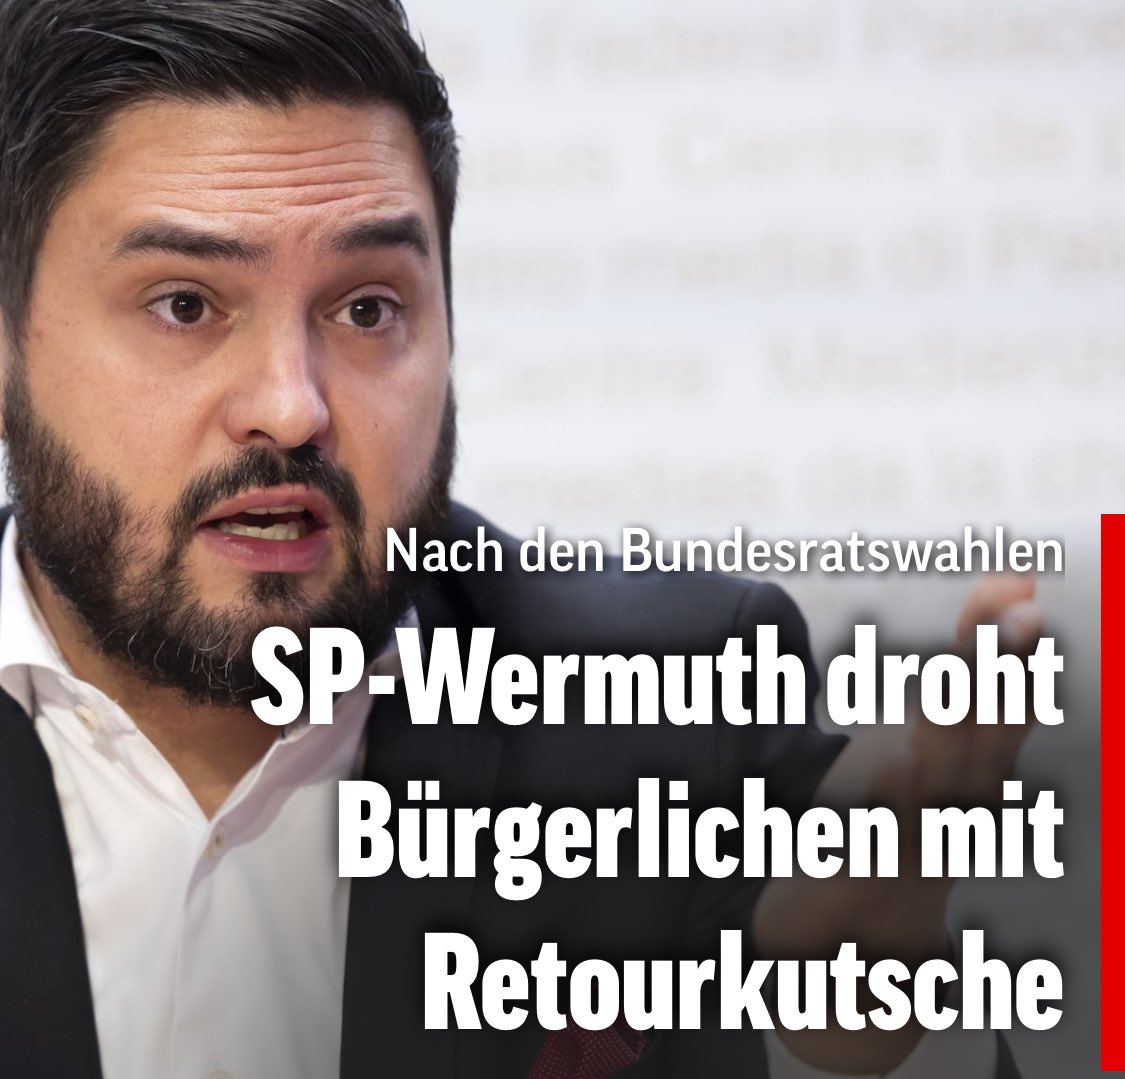 Wir zittern jetzt schon. #Kasperlitheater 

Nach den #Bundesratswahlen: SP-Wermuth droht Bürgerlichen mit Retourkutsche 

blick.ch/politik/bundes…